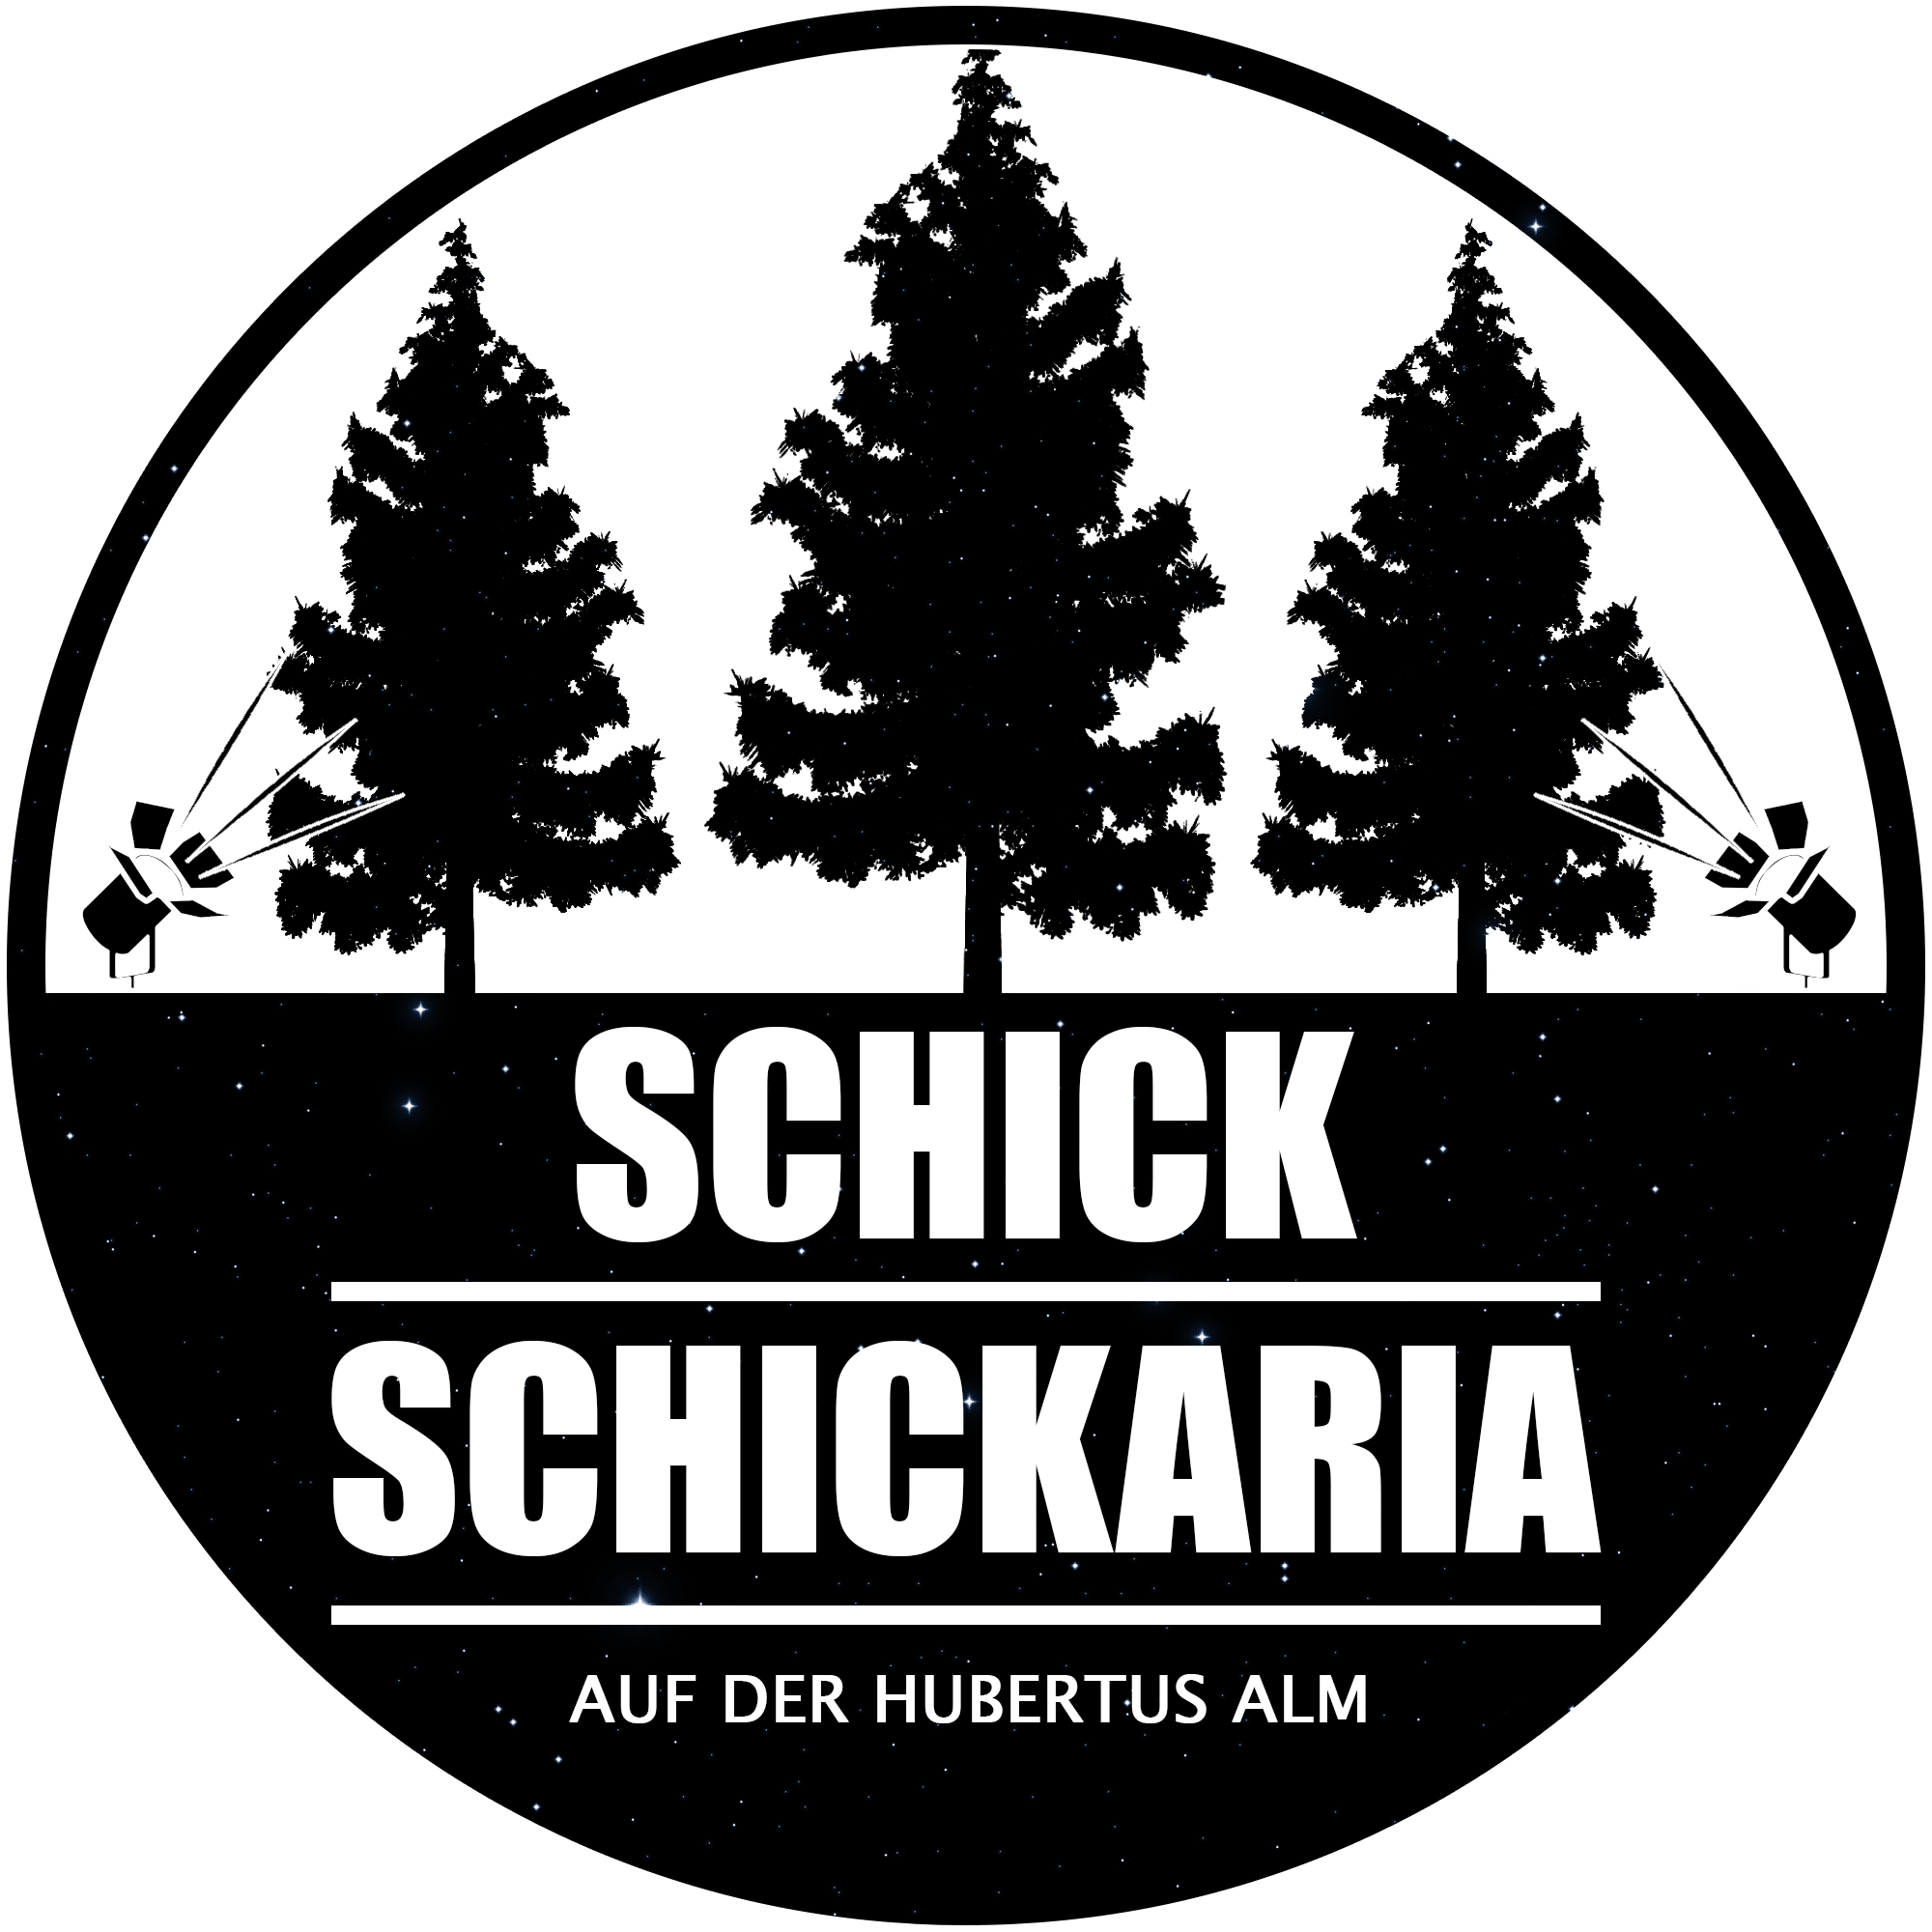 Schick Schickeria auf der Hubertusalm in Bad Mitterndorf